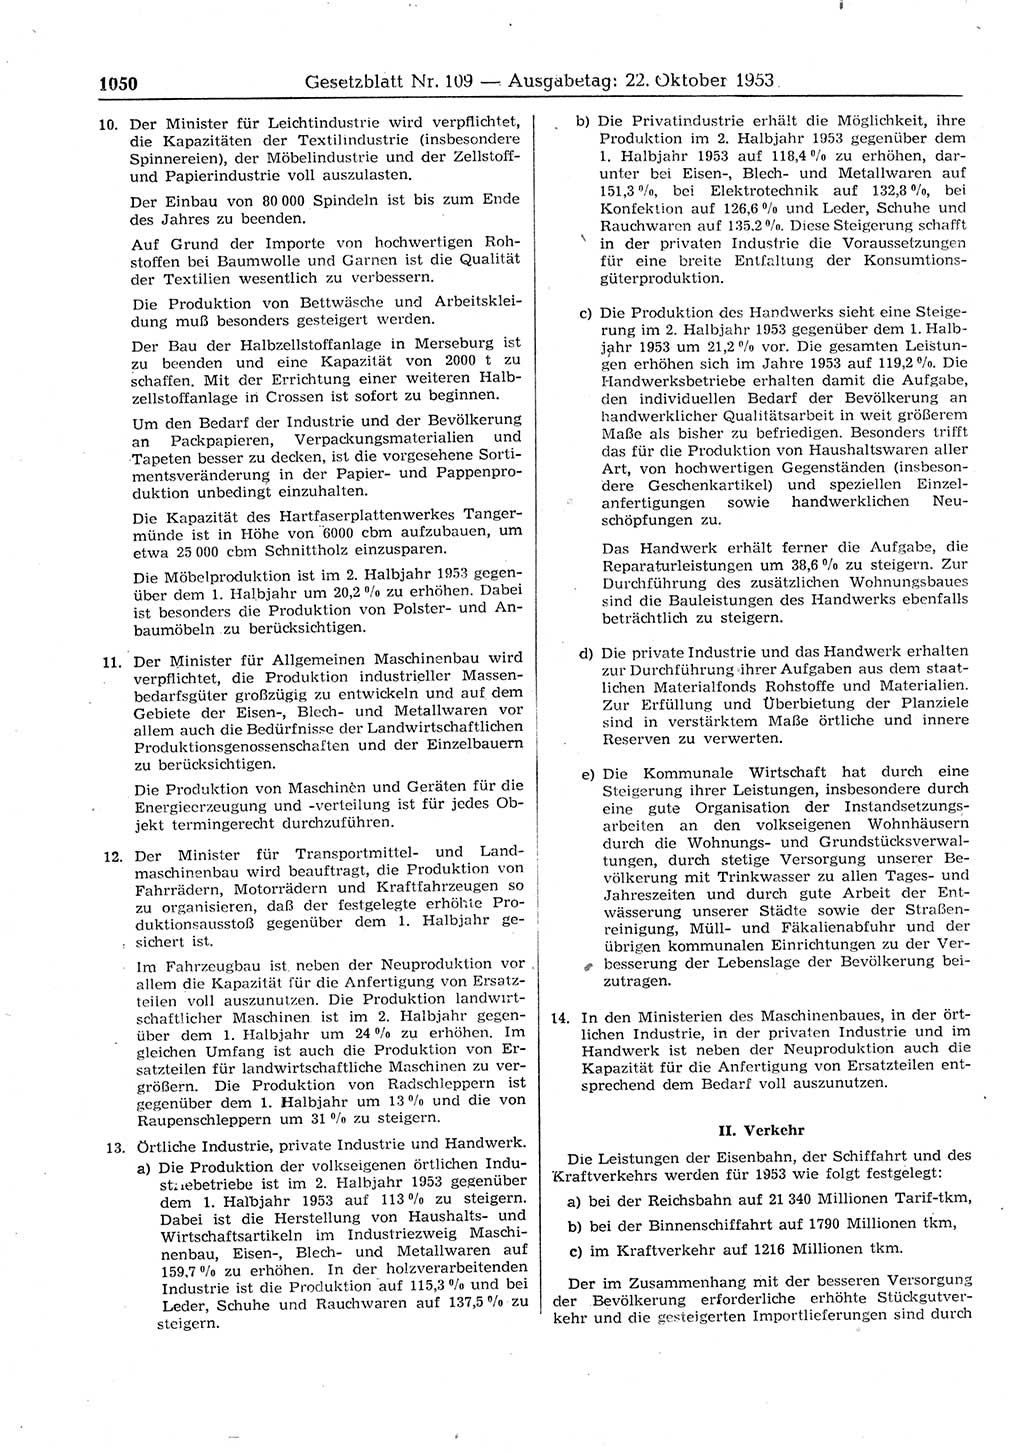 Gesetzblatt (GBl.) der Deutschen Demokratischen Republik (DDR) 1953, Seite 1050 (GBl. DDR 1953, S. 1050)